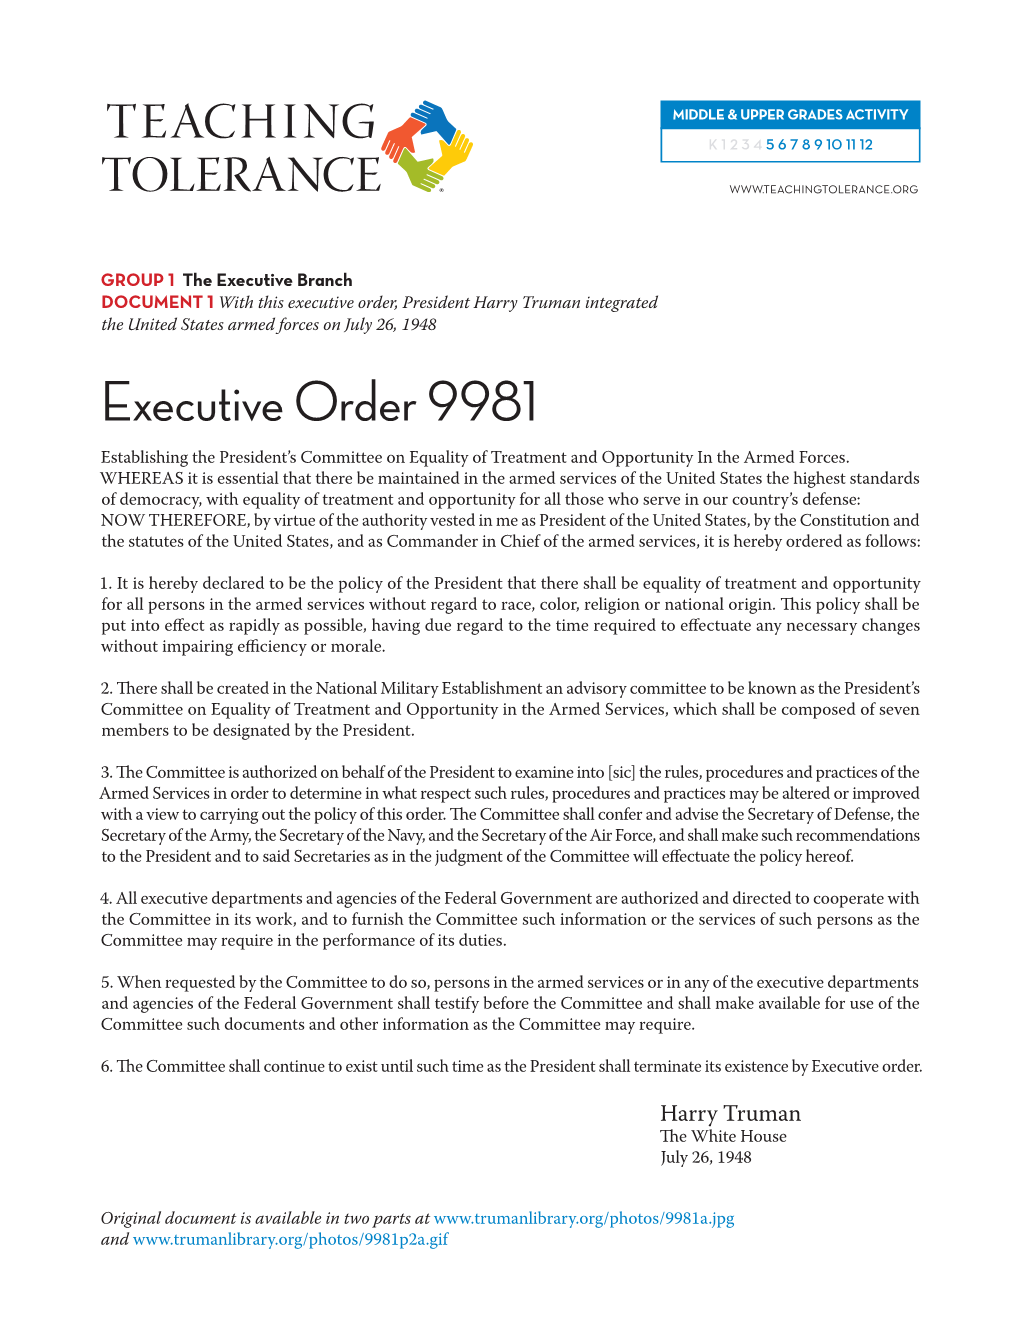 Executive Order 9981